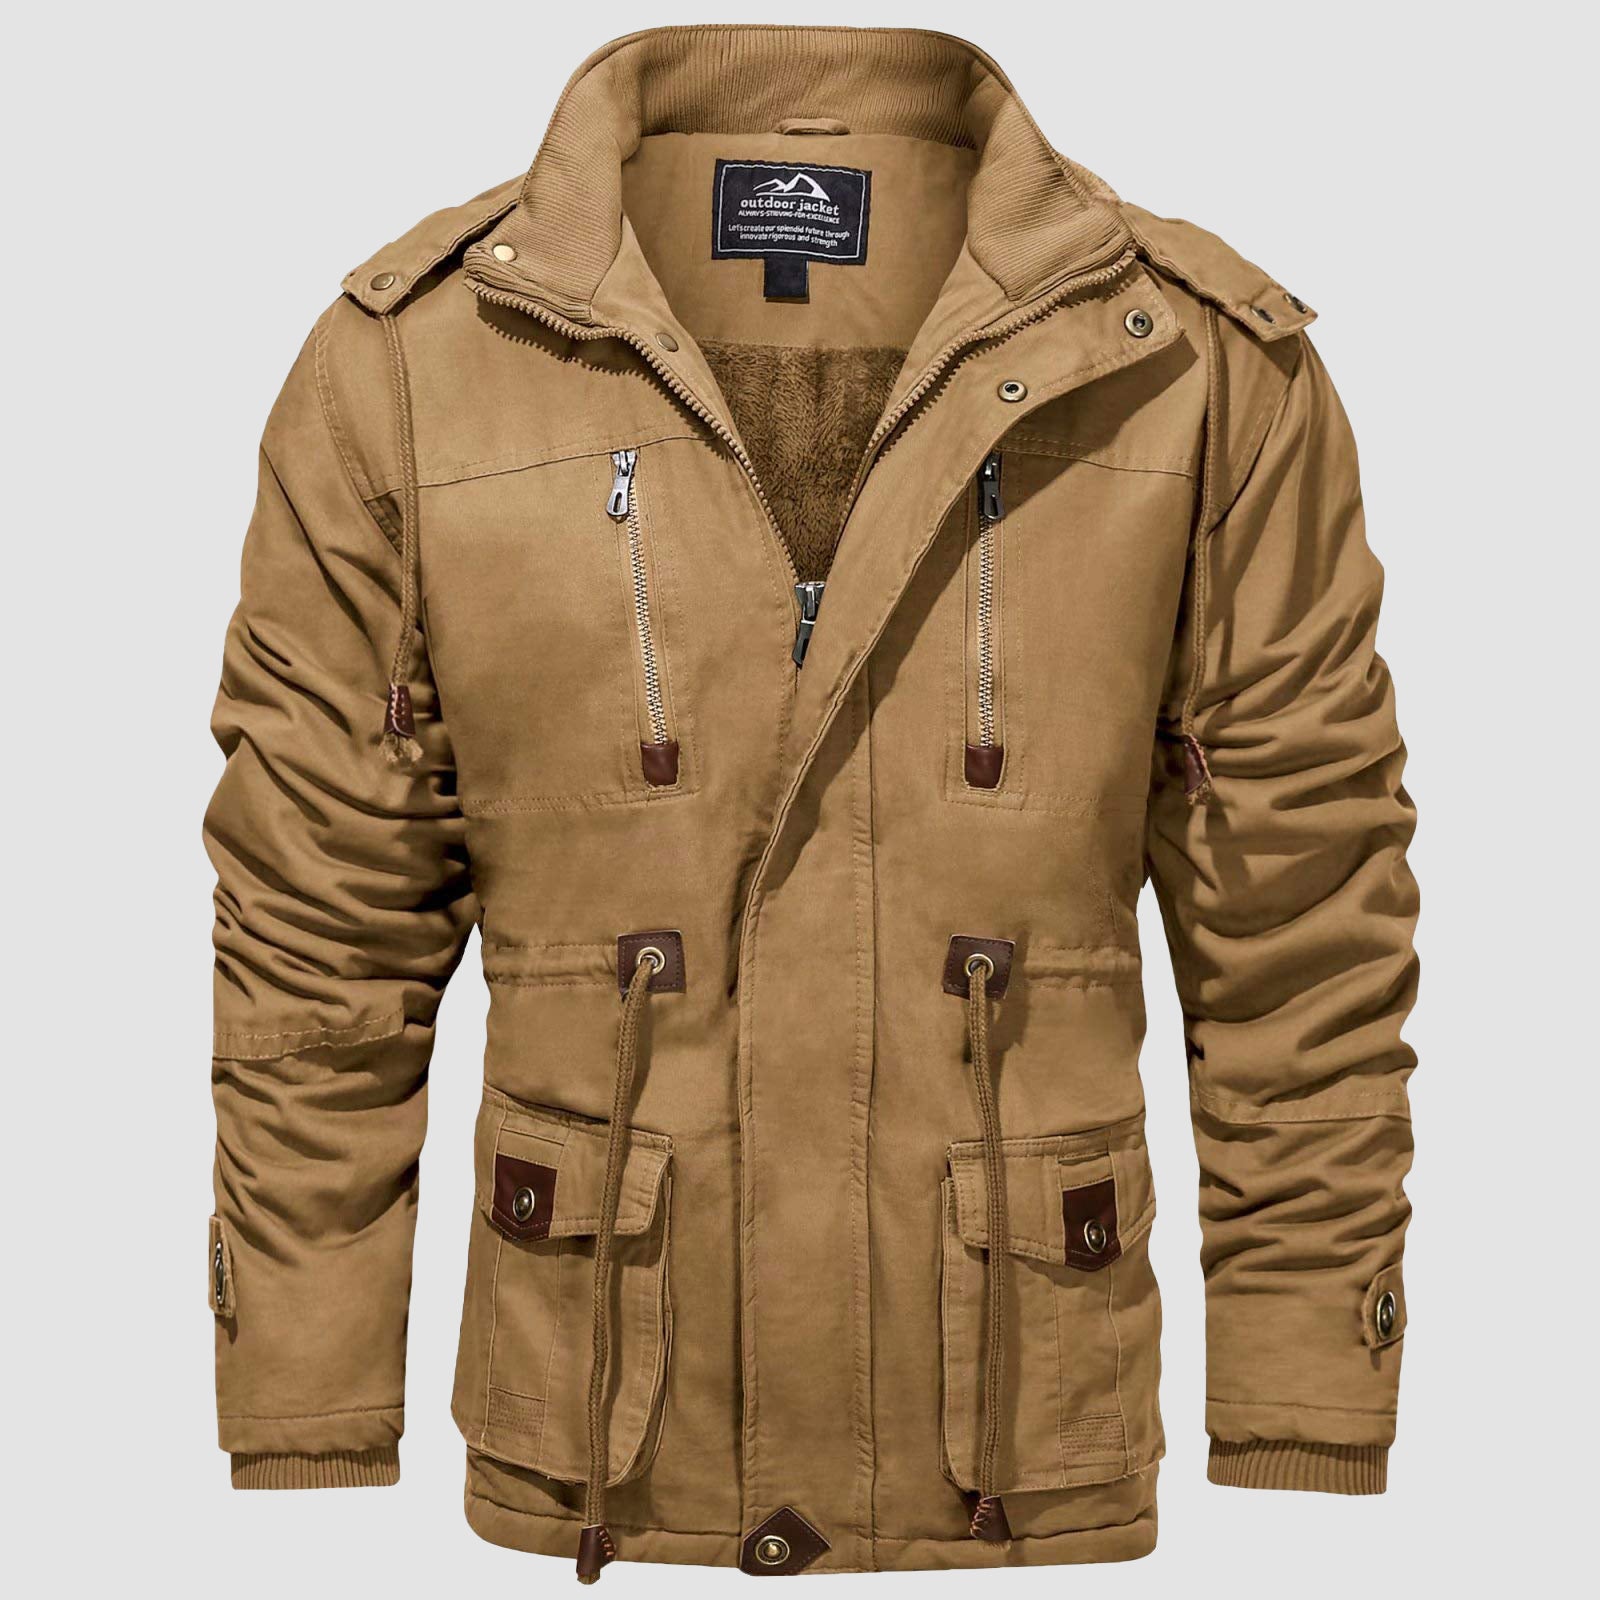 Men's Parka Jacket Military Coat  Thick Fleece Winter Cargo Overcoat